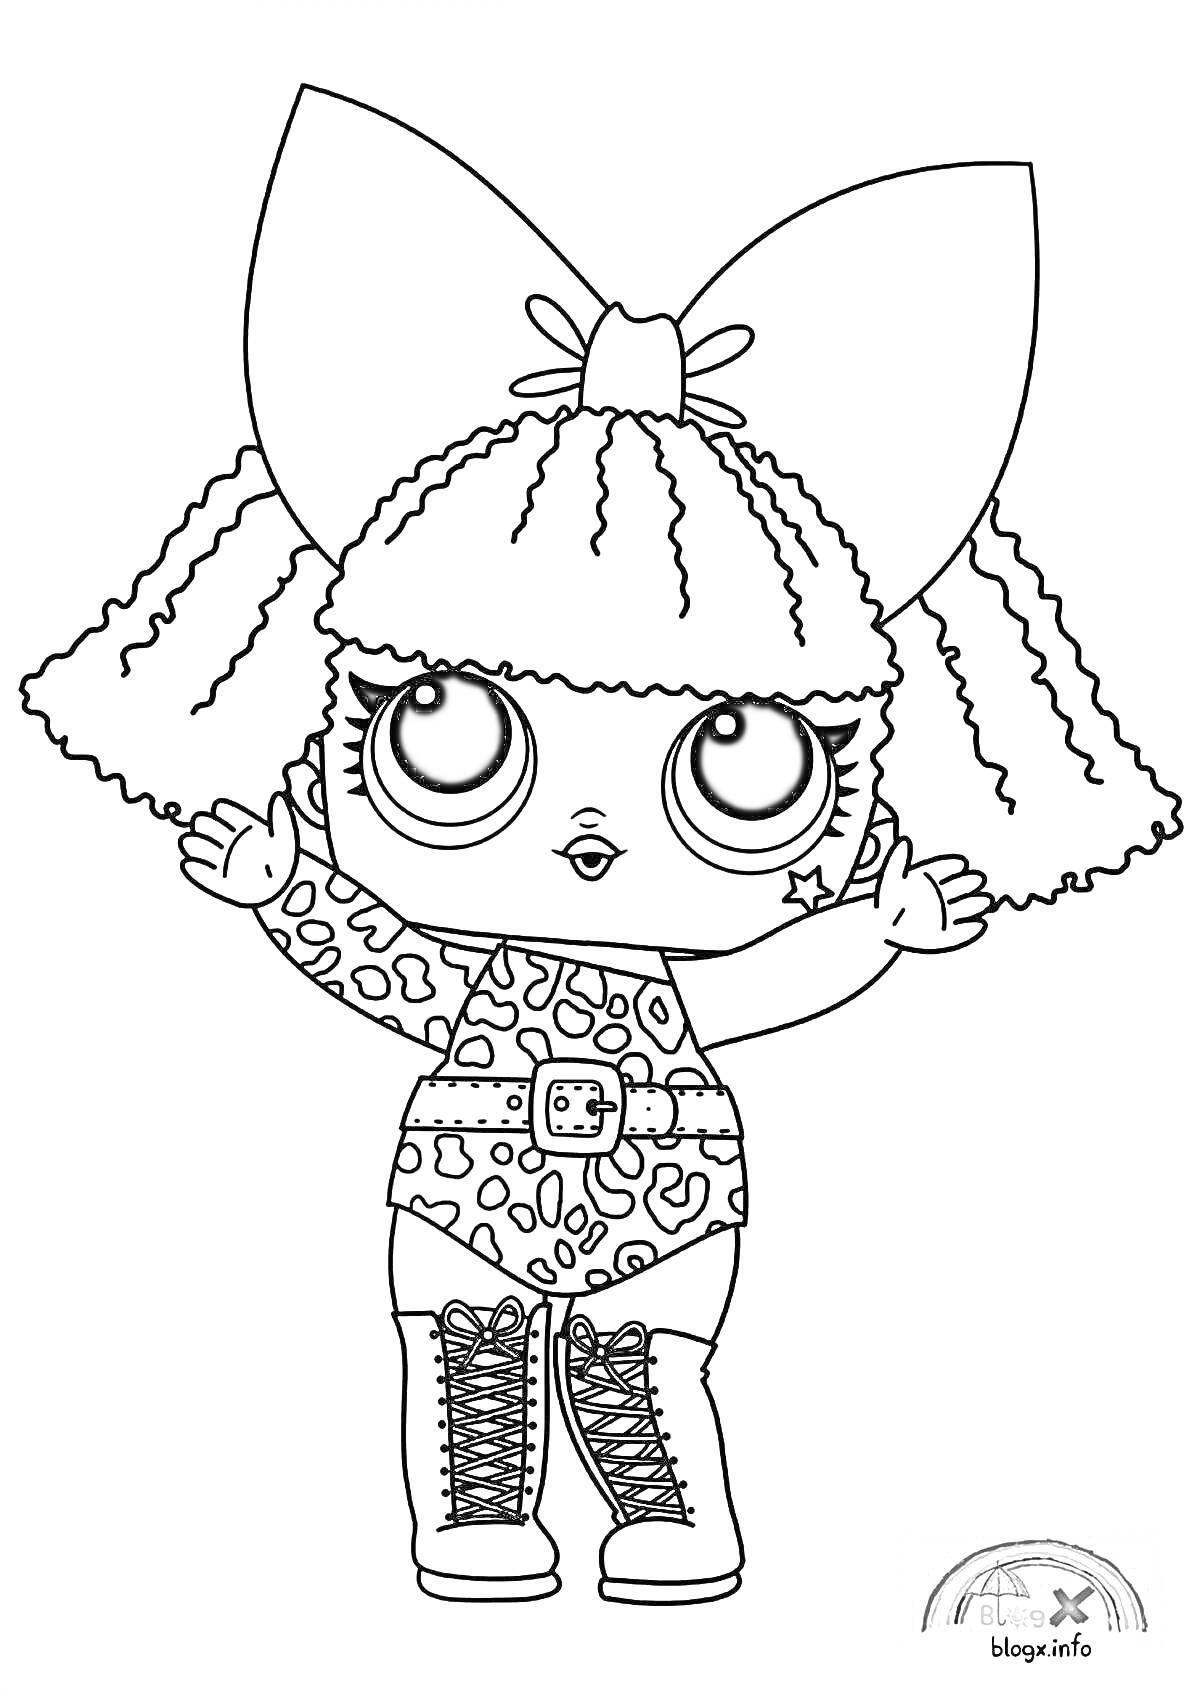 Раскраска LOL кукла с большим бантом на голове, в леопардовом платье и ботинках